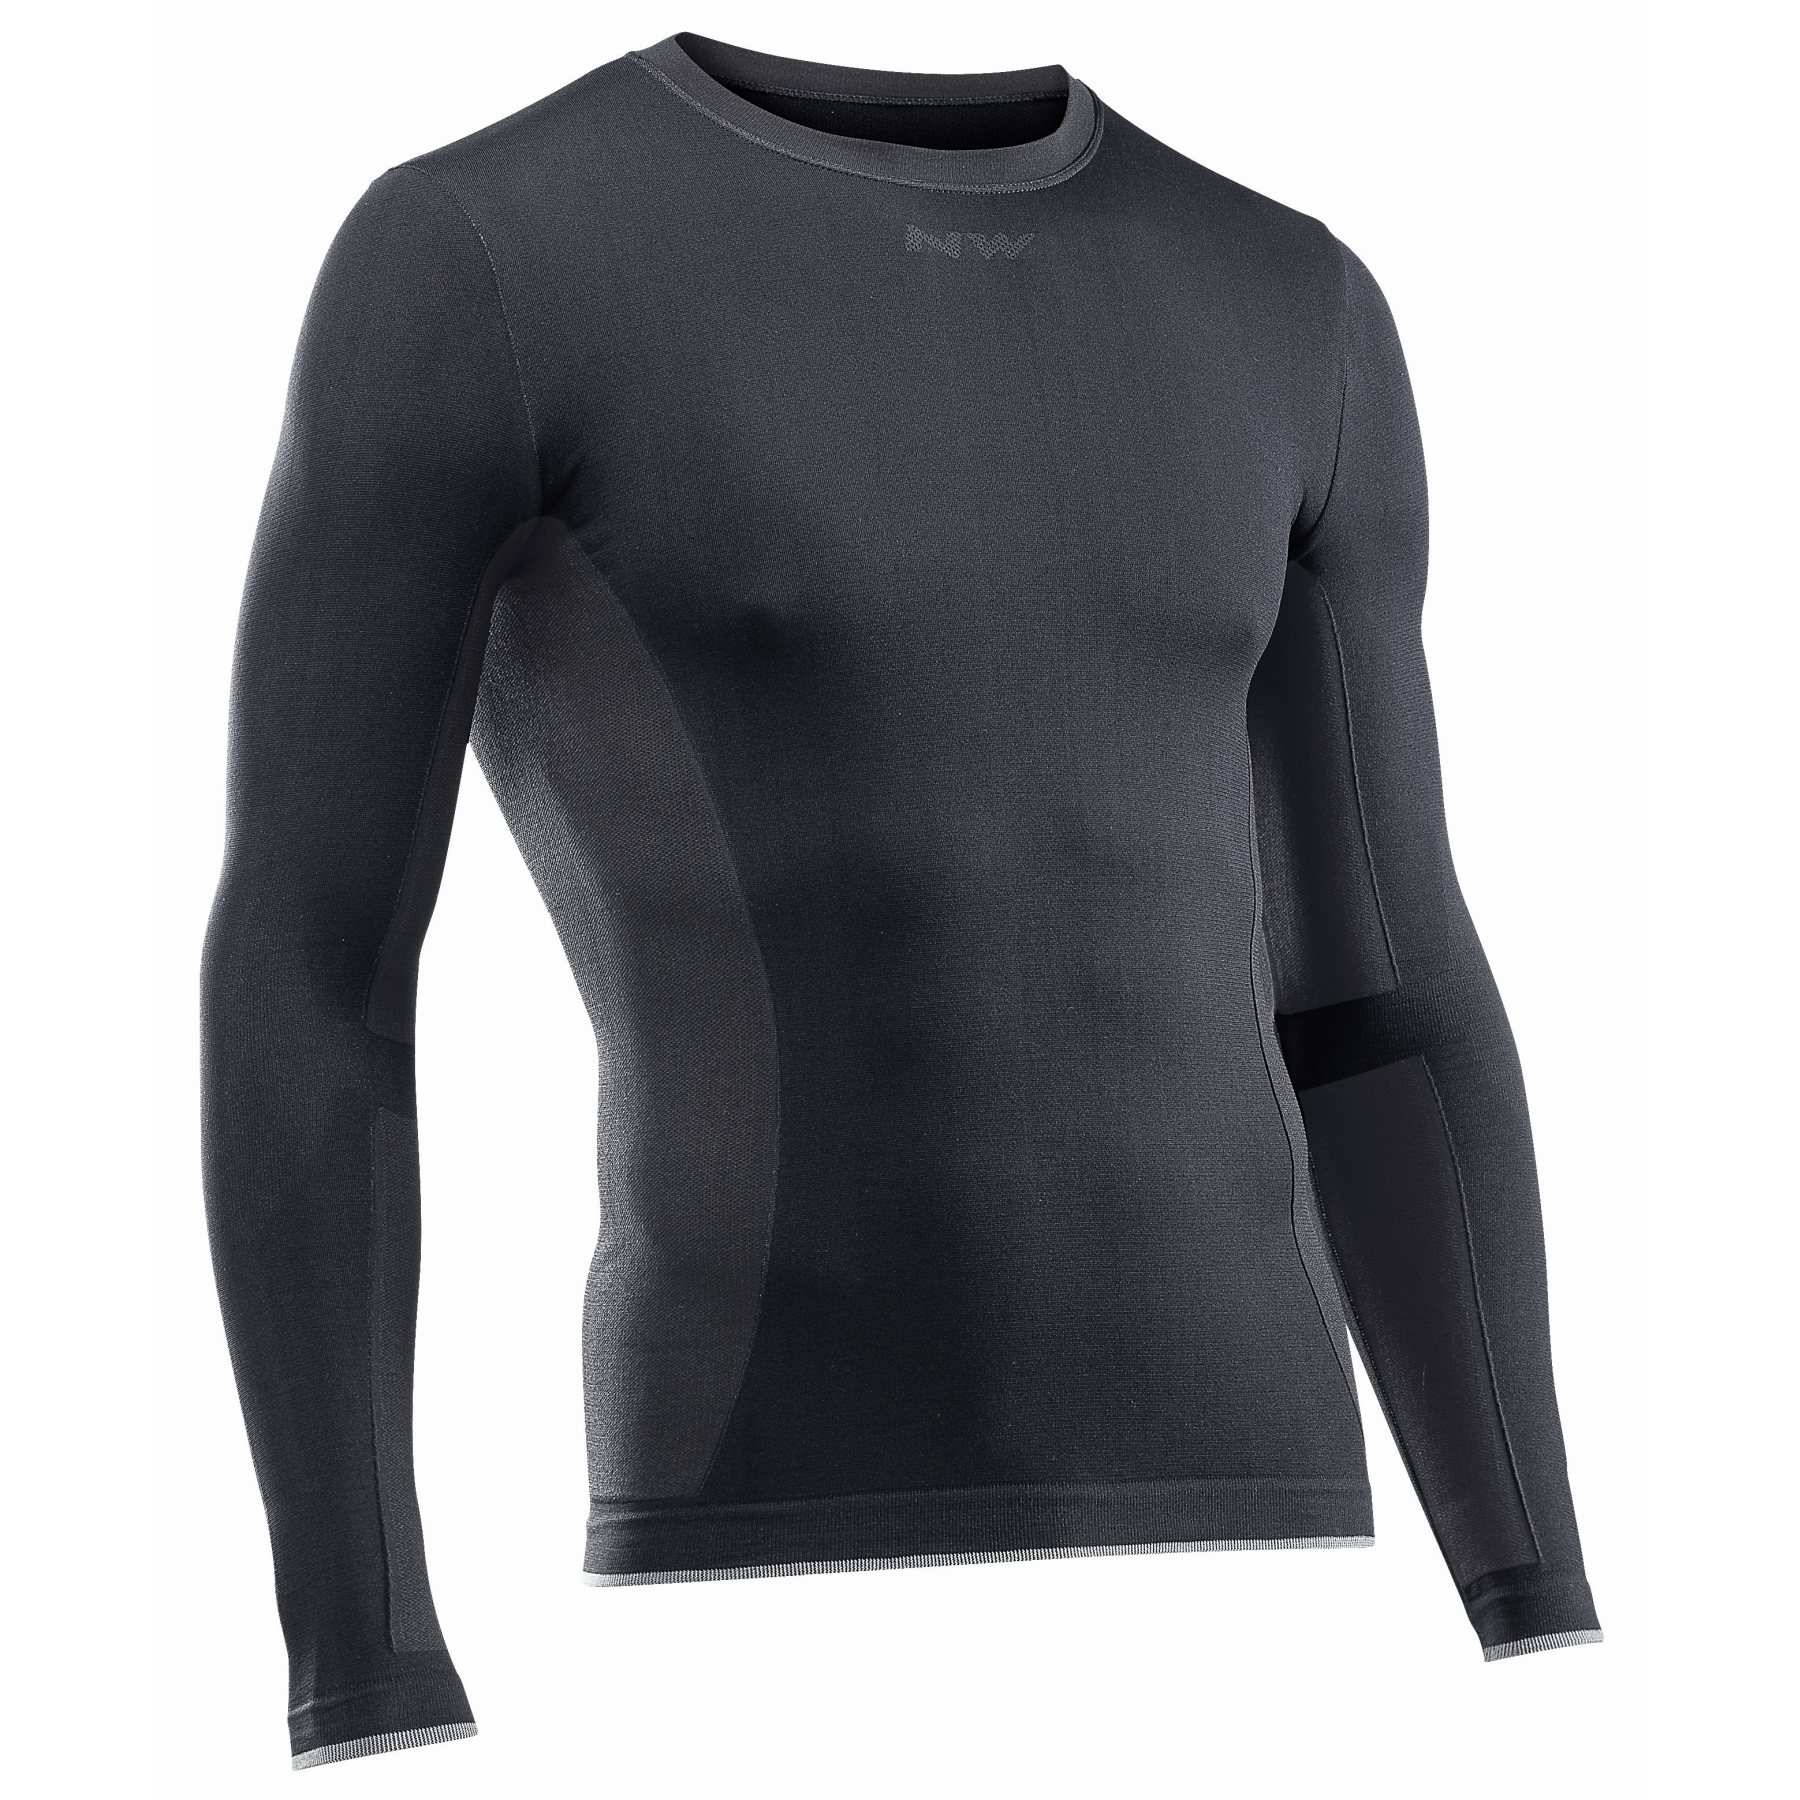 Produktbild von Northwave Surface Langarm-Unterhemd - schwarz 10